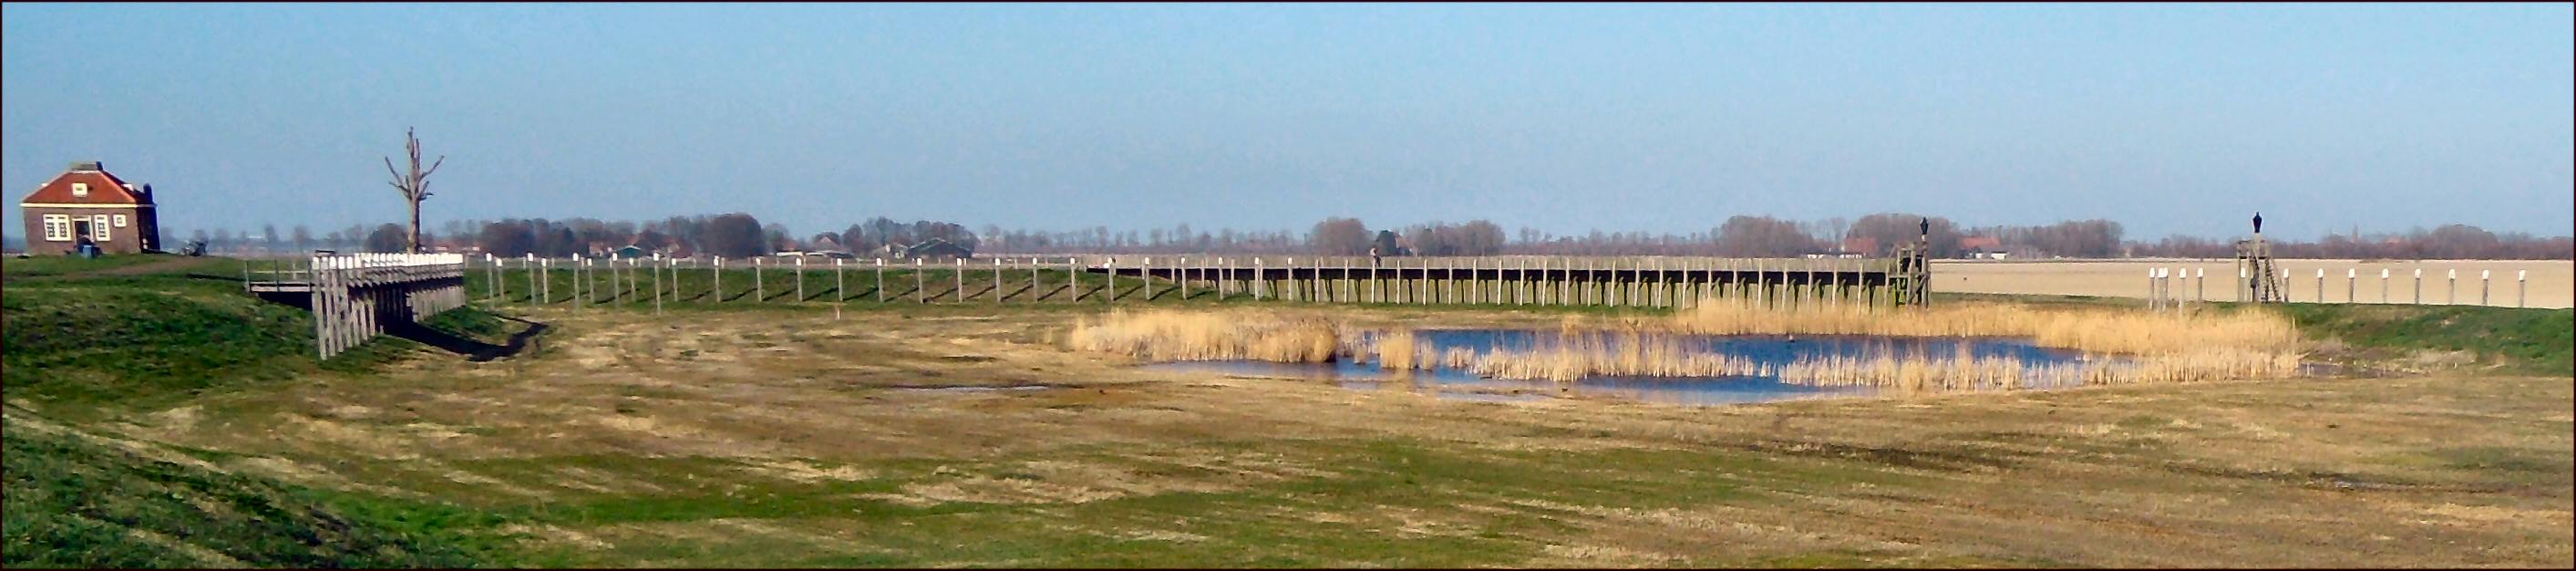 Haven van Emmeloord in 2014. Foto Henk van Heerde